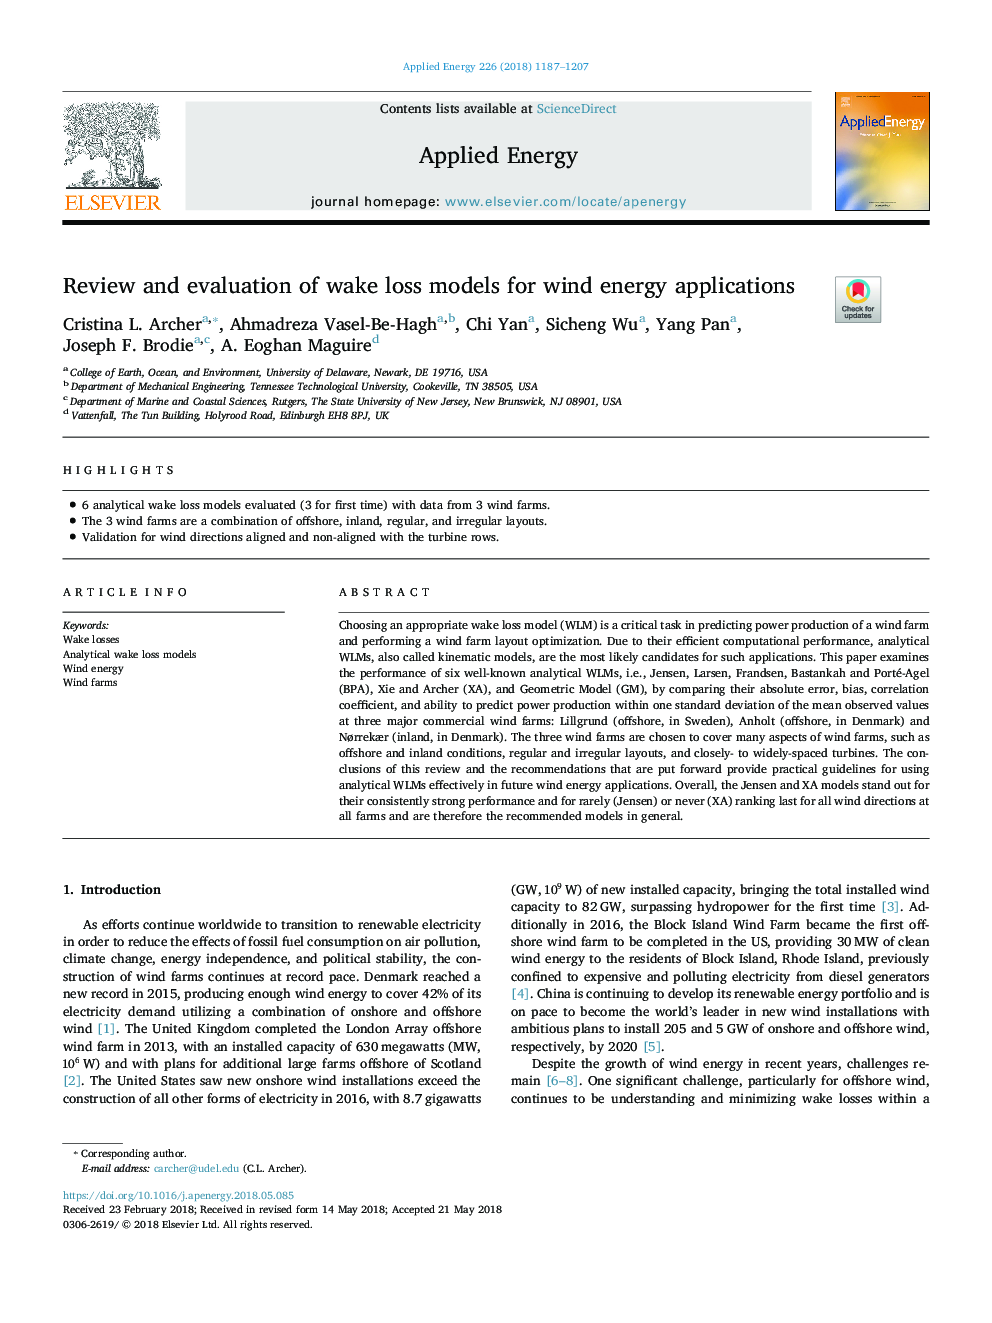 بررسی و ارزیابی مدل های تلفات خورشیدی برای کاربردهای انرژی باد 